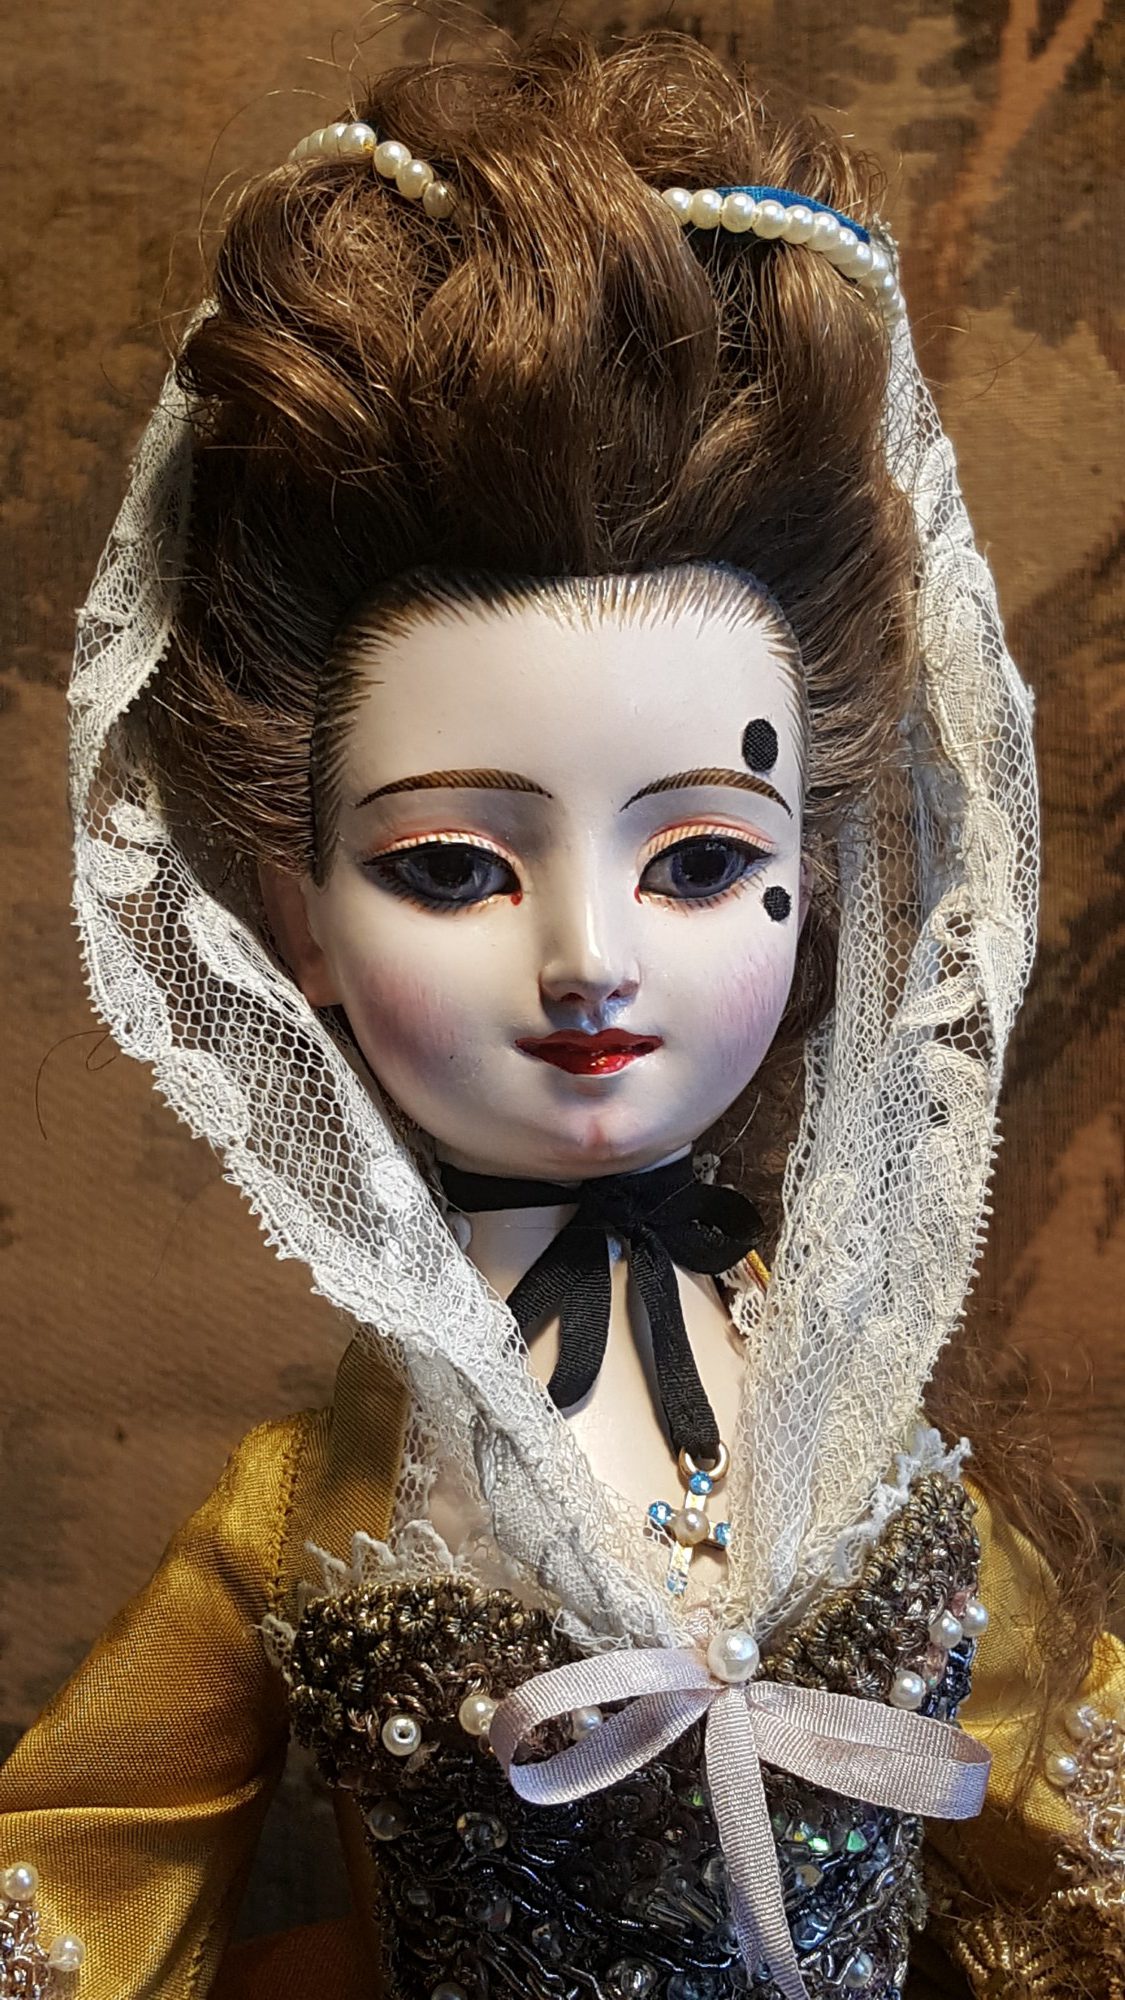 התערוכה – "The Doll – the World Within"- בובות אמנותיות, ציור, גרפיקה, צילום